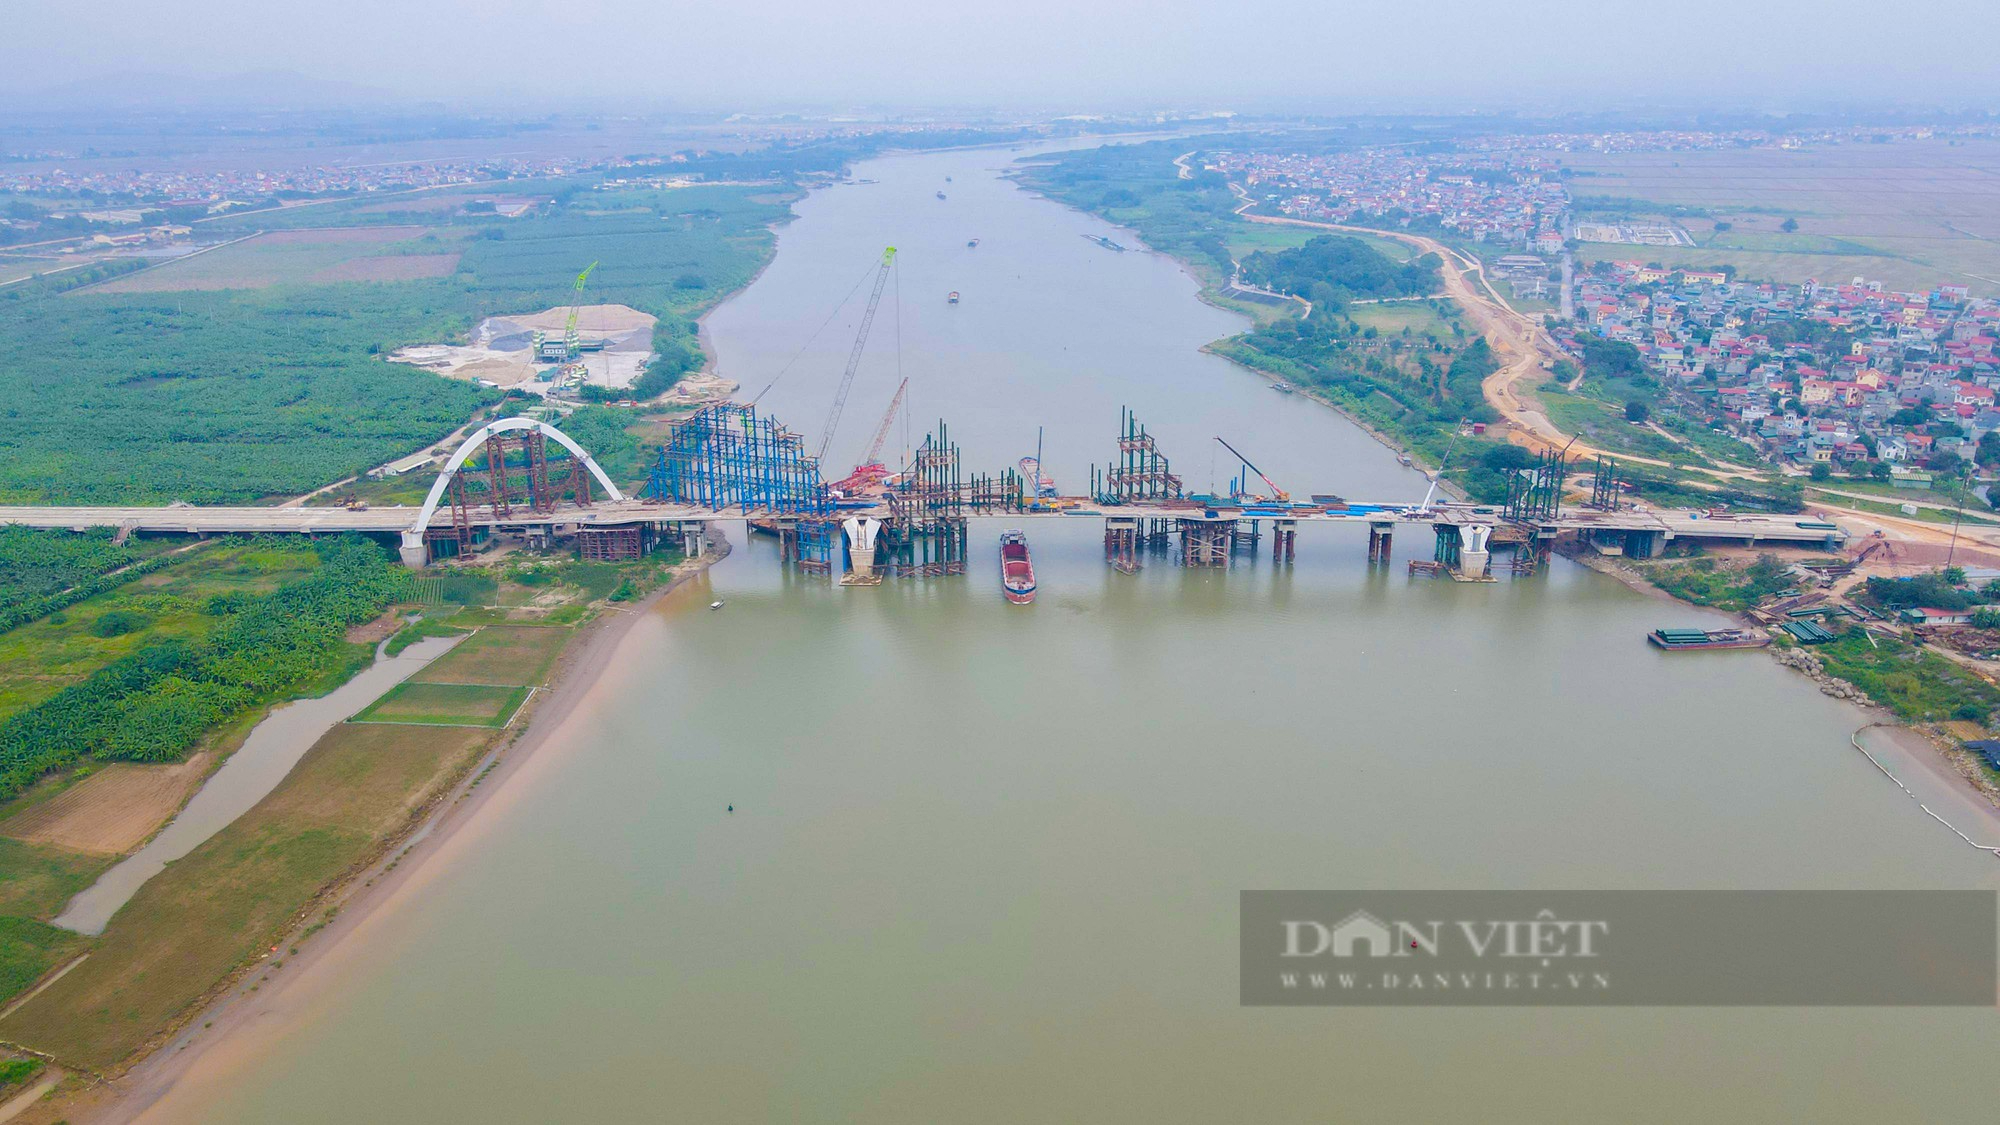 Chiêm ngưỡng cây cầu vòm thép 1.900 tỷ cao nhất Việt Nam - Ảnh 1.